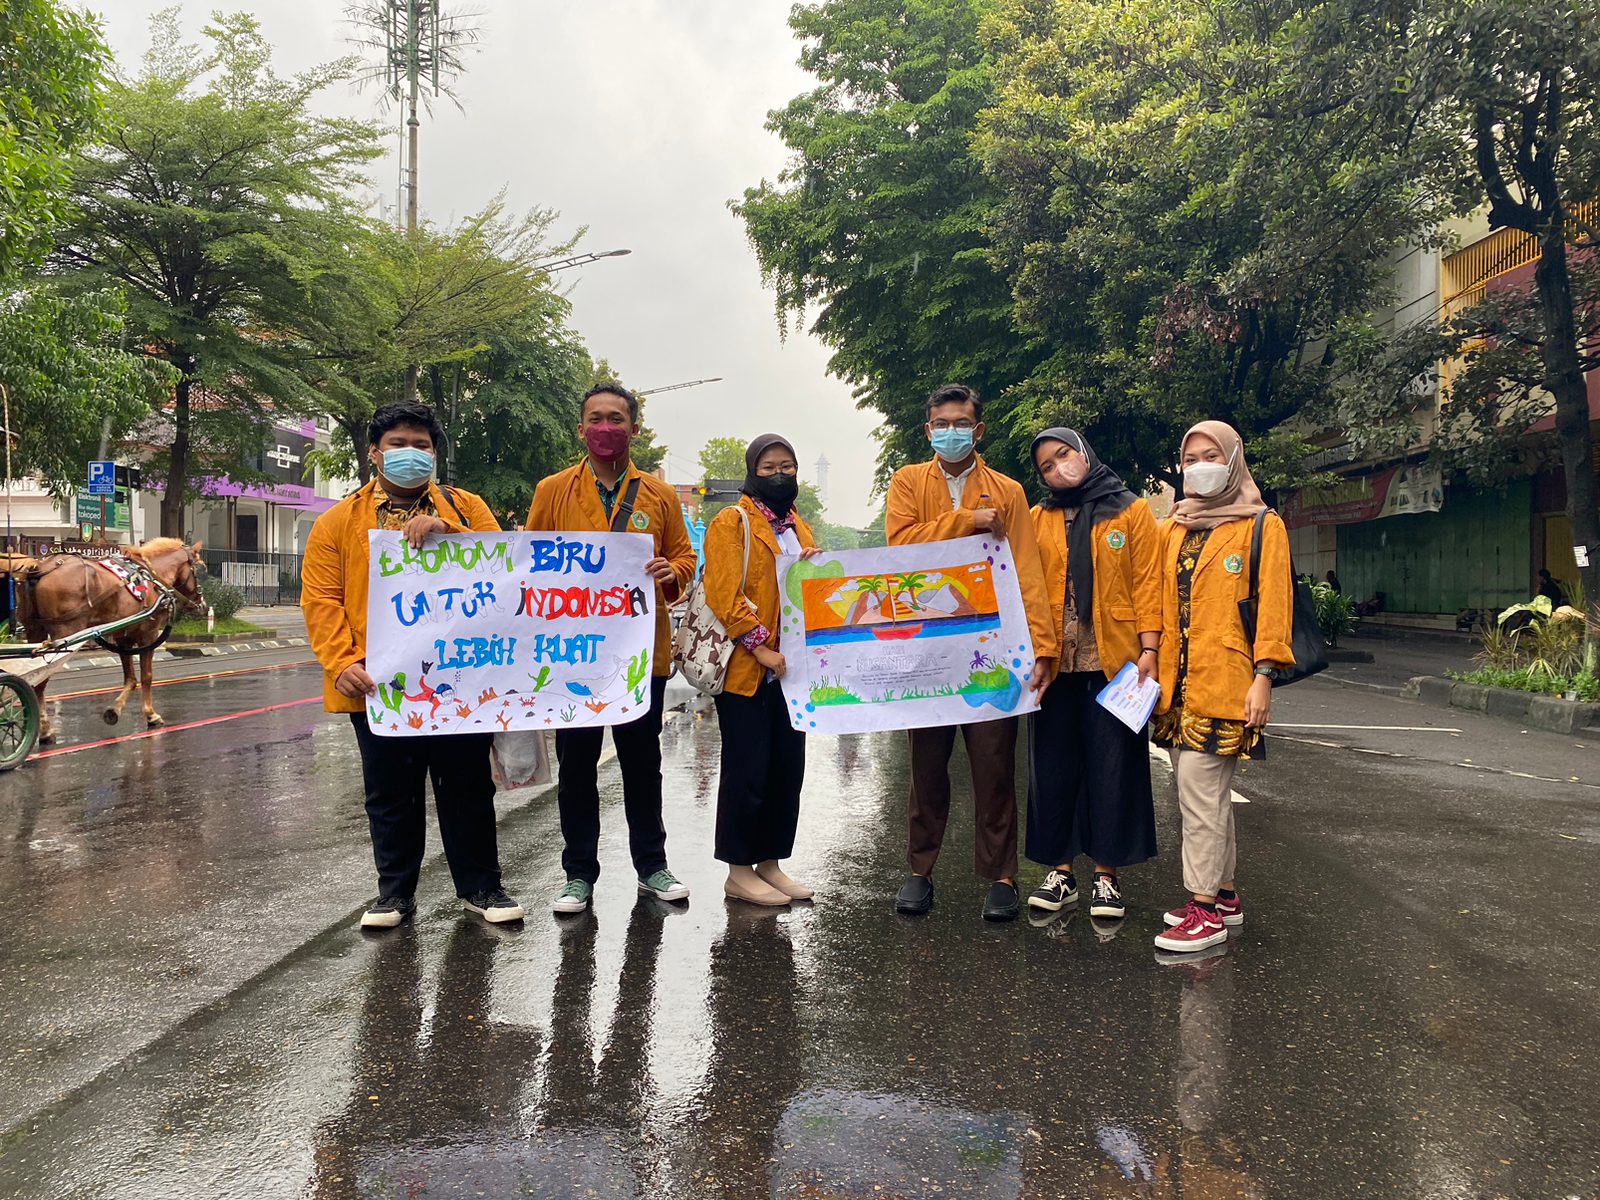 Mahasiswa Ilmu Komunikasi Melakukan Kegiatan Turun Aksi Membagikan Brosur Hari Nusantara Di CFD Slamet Riyadi Surakarta